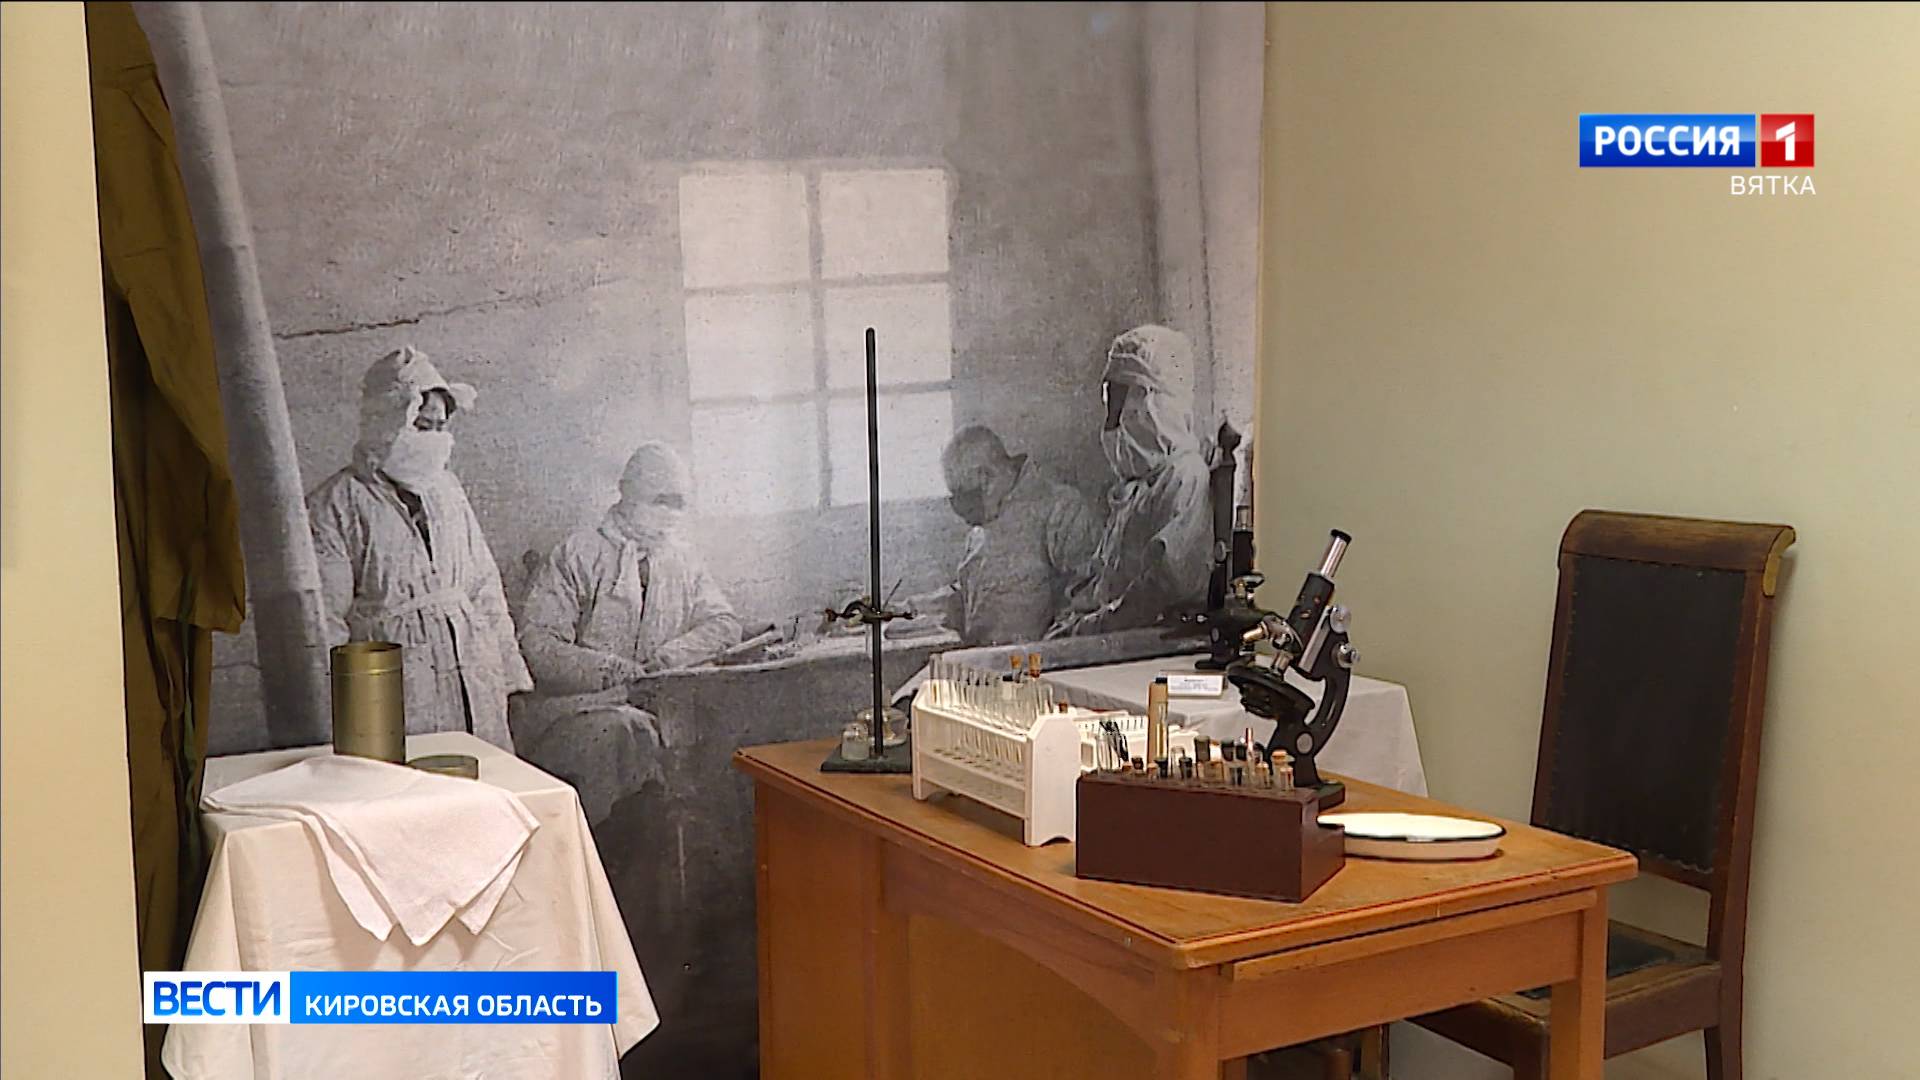 В Музее воинской славы открылась выставка «Солдаты невидимого фронта», посвященная истории микробиол